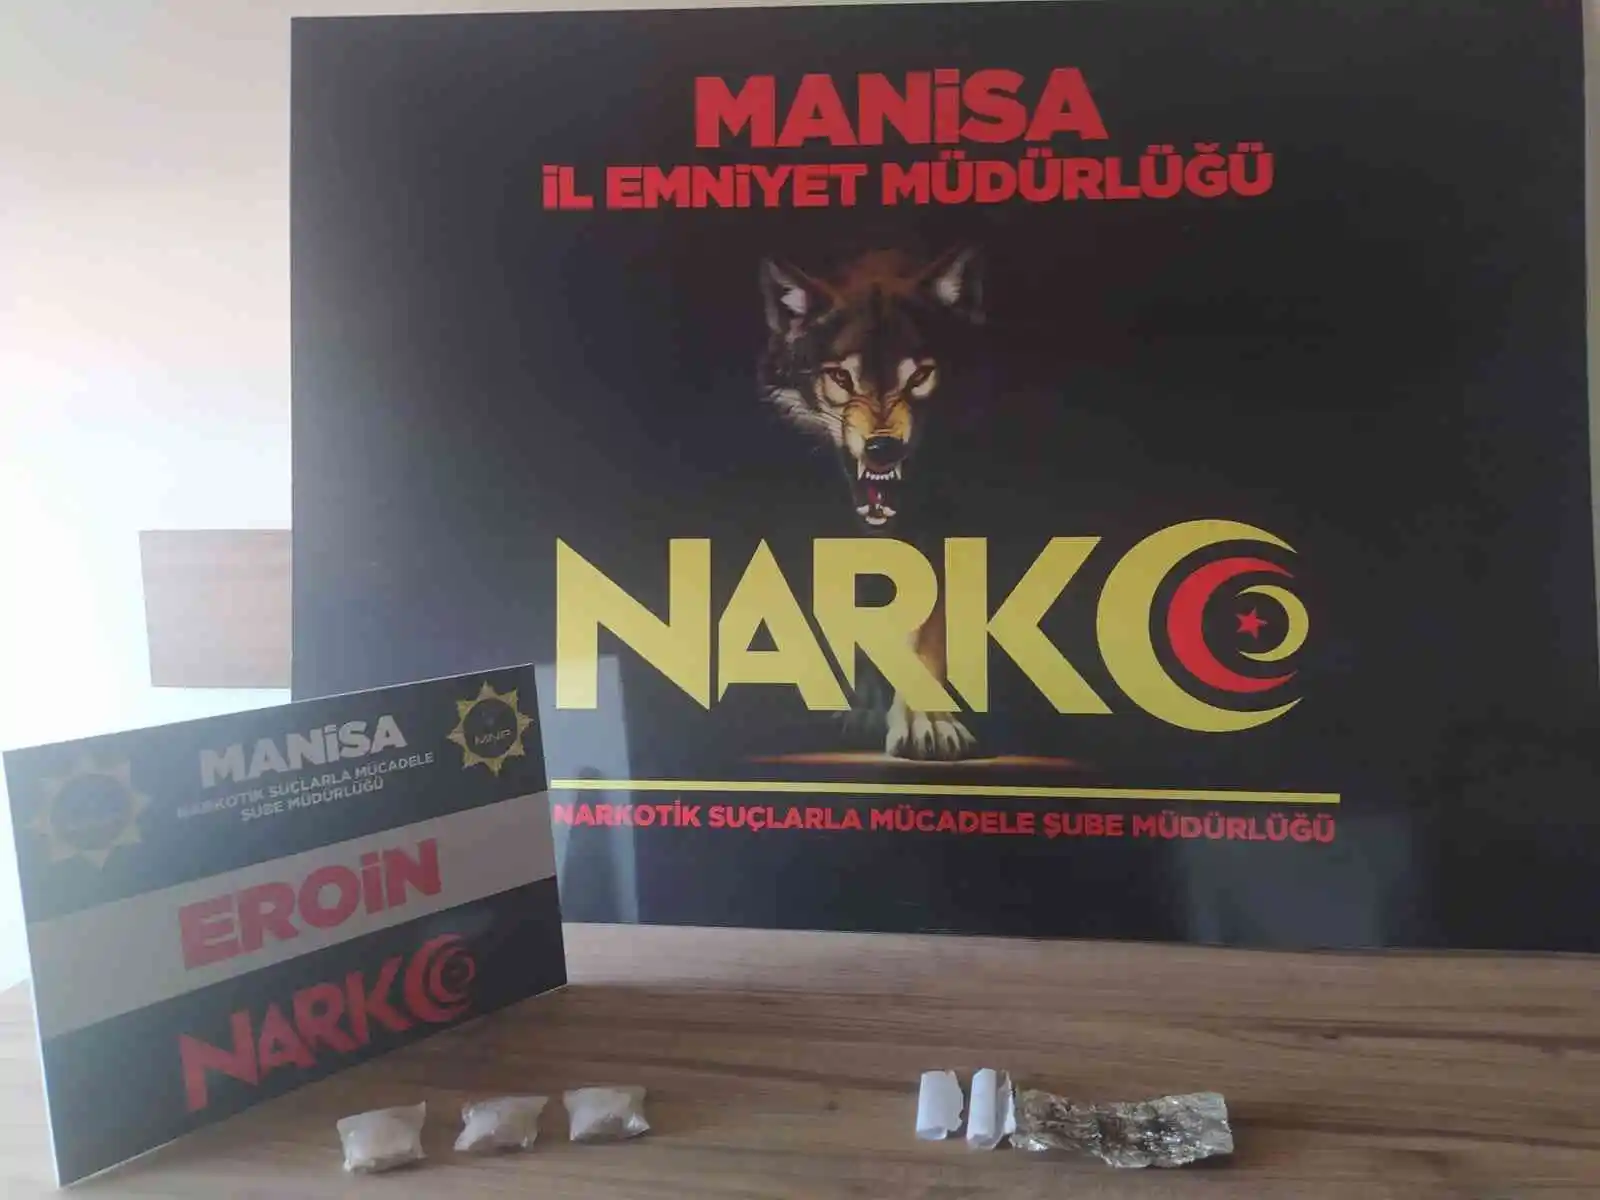 Manisa'da eroin ve esrar yakalandı: 3 gözaltı
